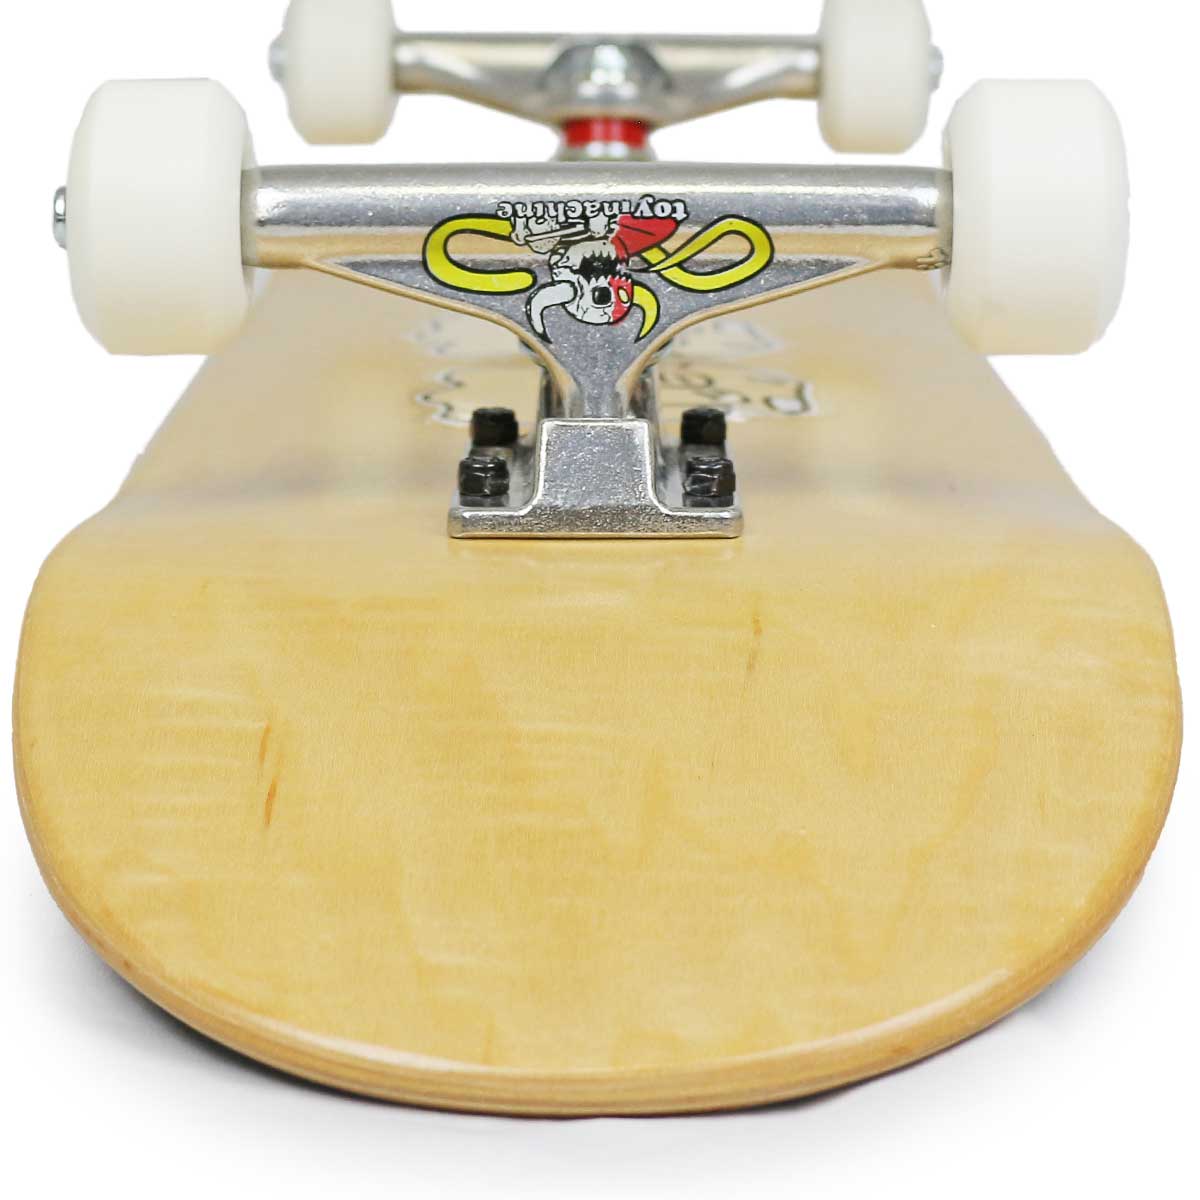 スケボーコンプリート 8.0 8.125 8.25インチ ブランクデッキ インディトイマシーントラック Toymachine Independent  Skateboards Complete スケートボード